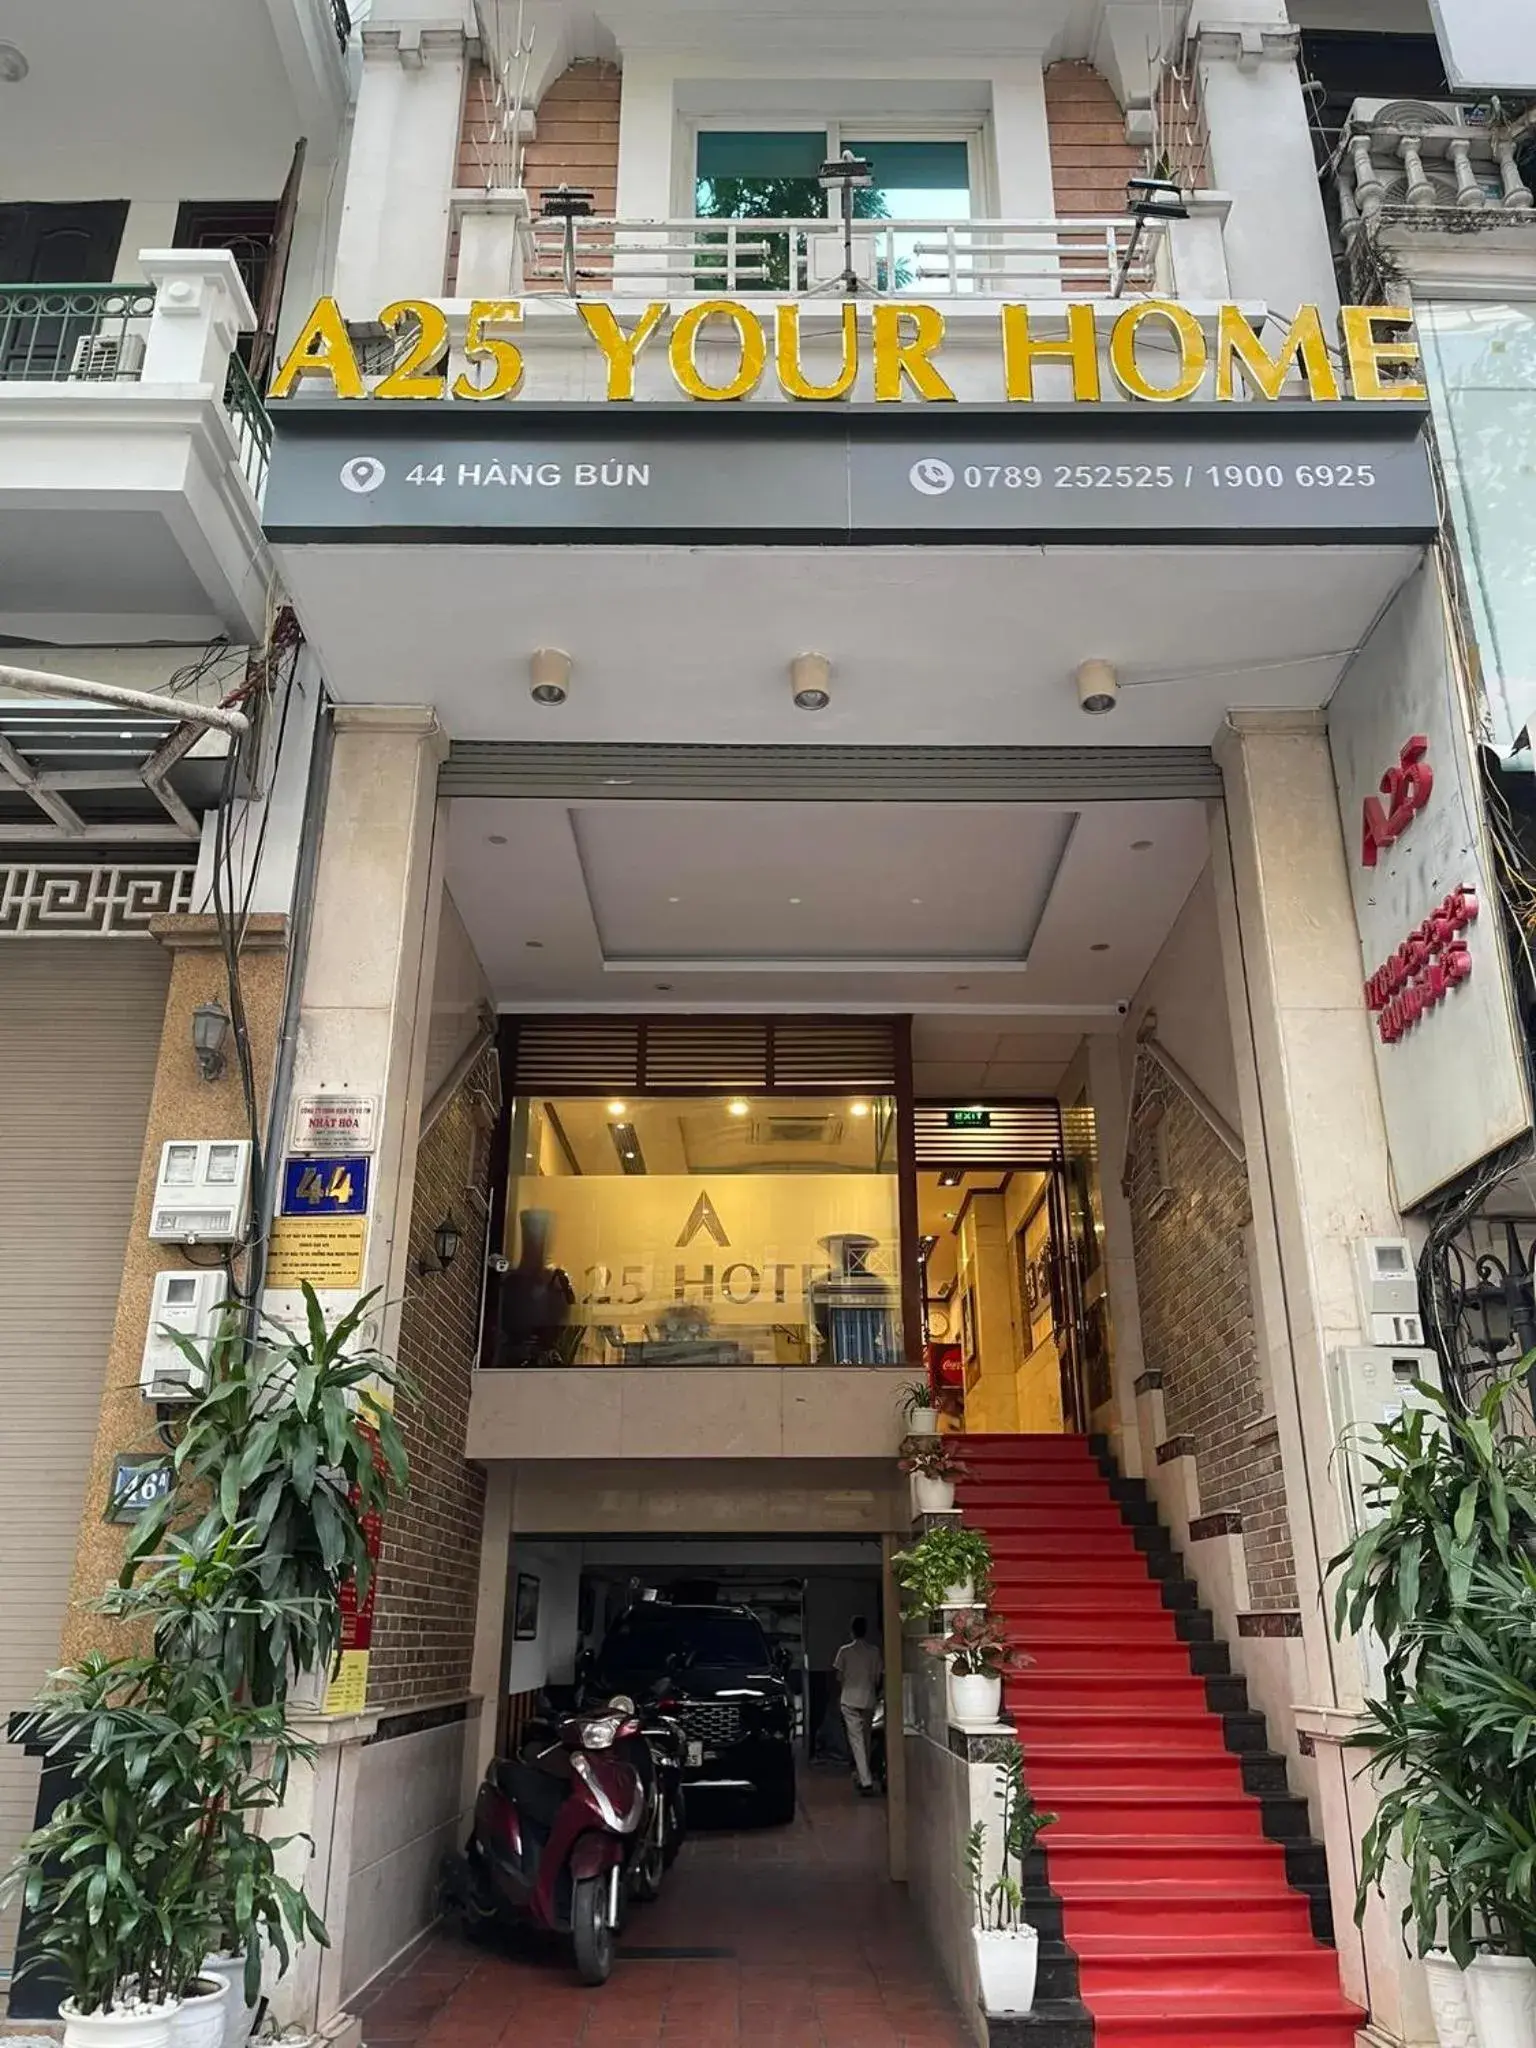 A25 Hotel - 44 Hang Bun